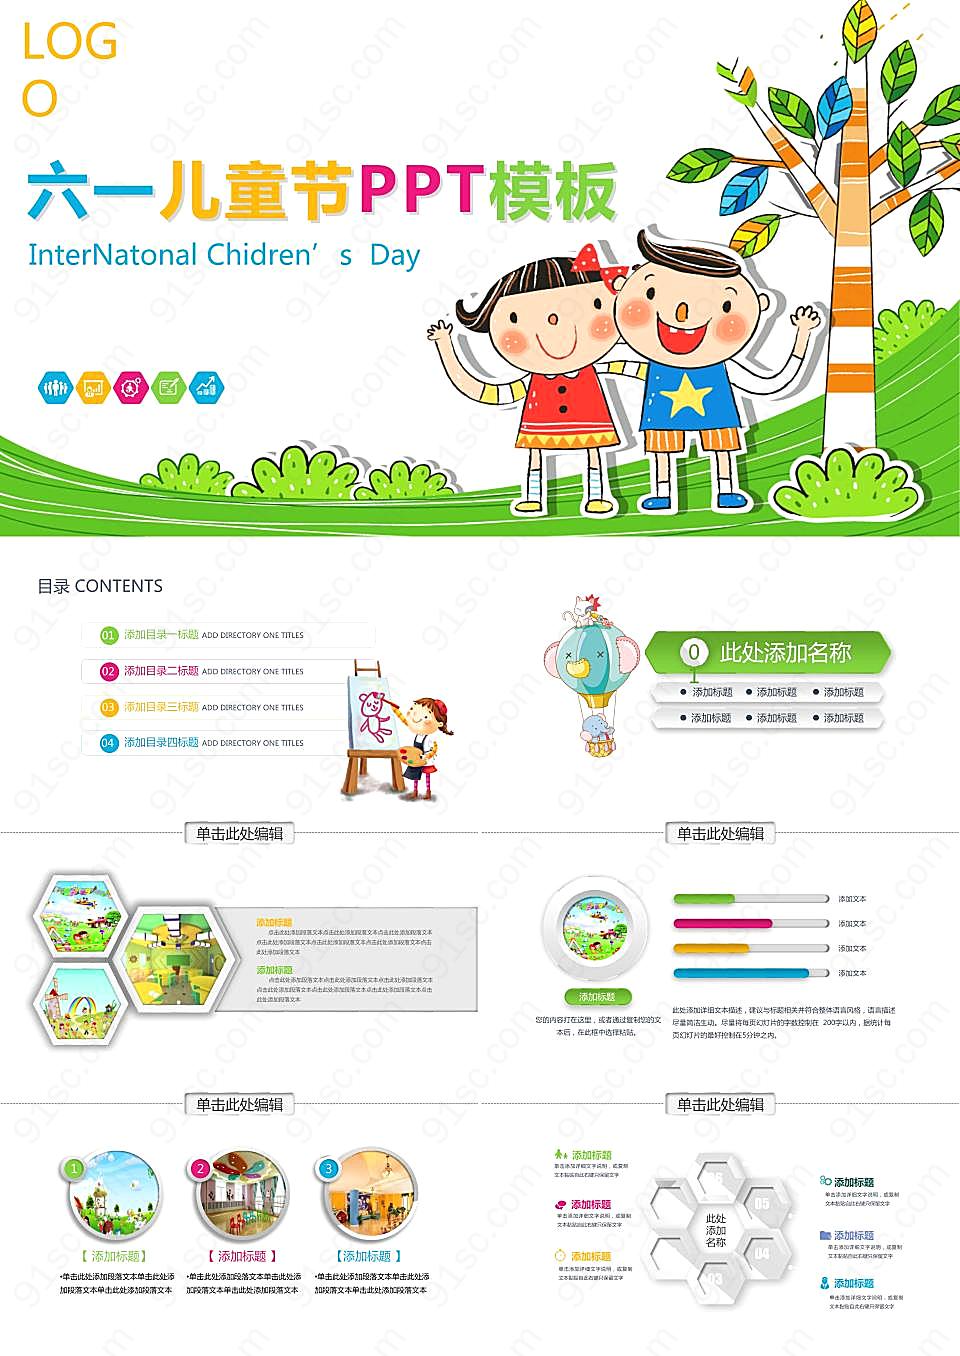 彩色可爱卡通小朋友背景六一儿童节PPT模板